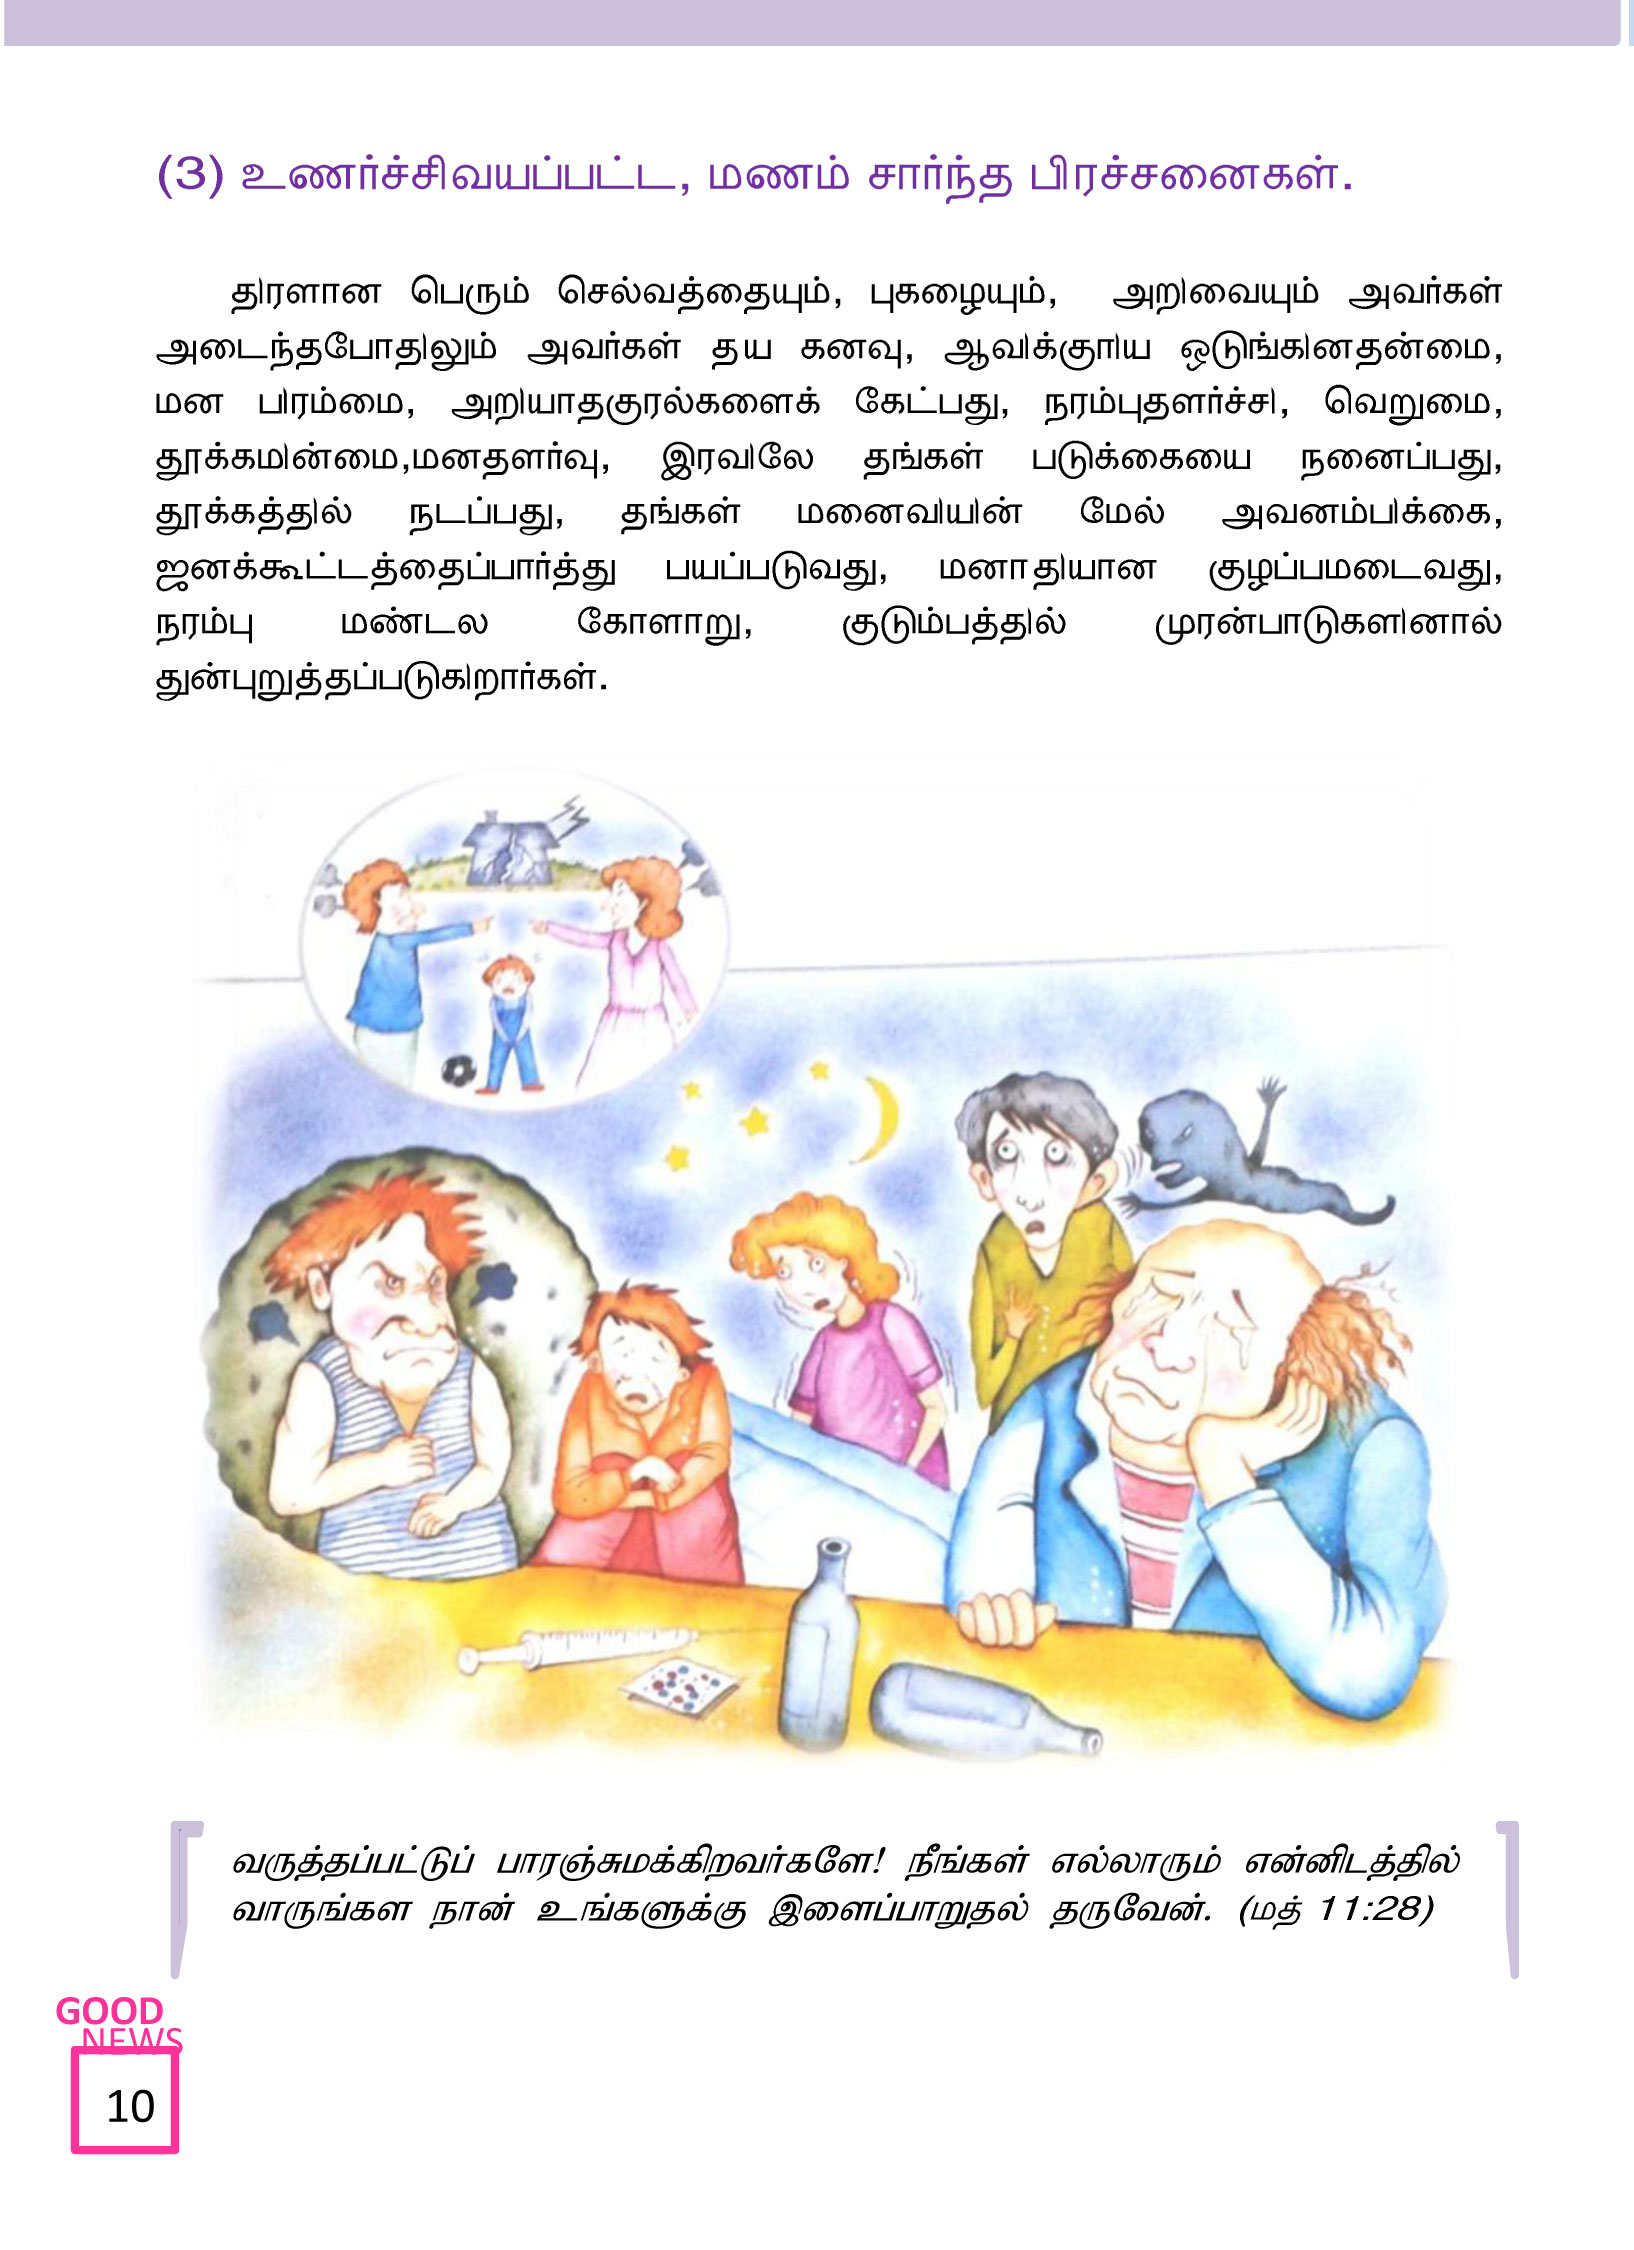 Tamil-Evangelism-Book-Pdf-3-10.jpg